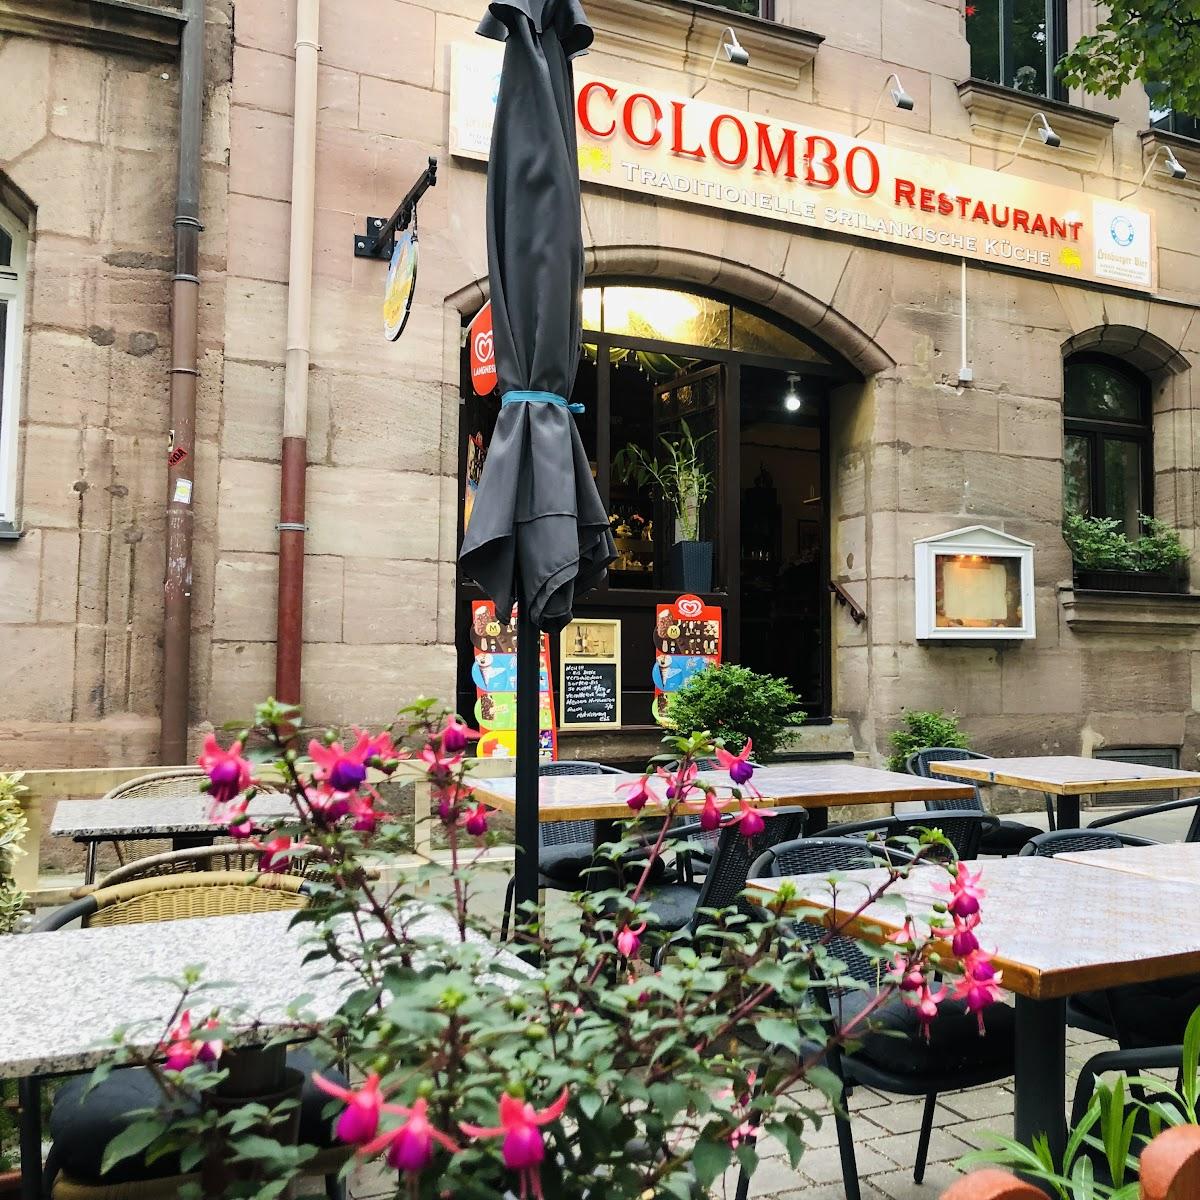 Restaurant "Colombo Restaurant Nürnberg" in Nürnberg